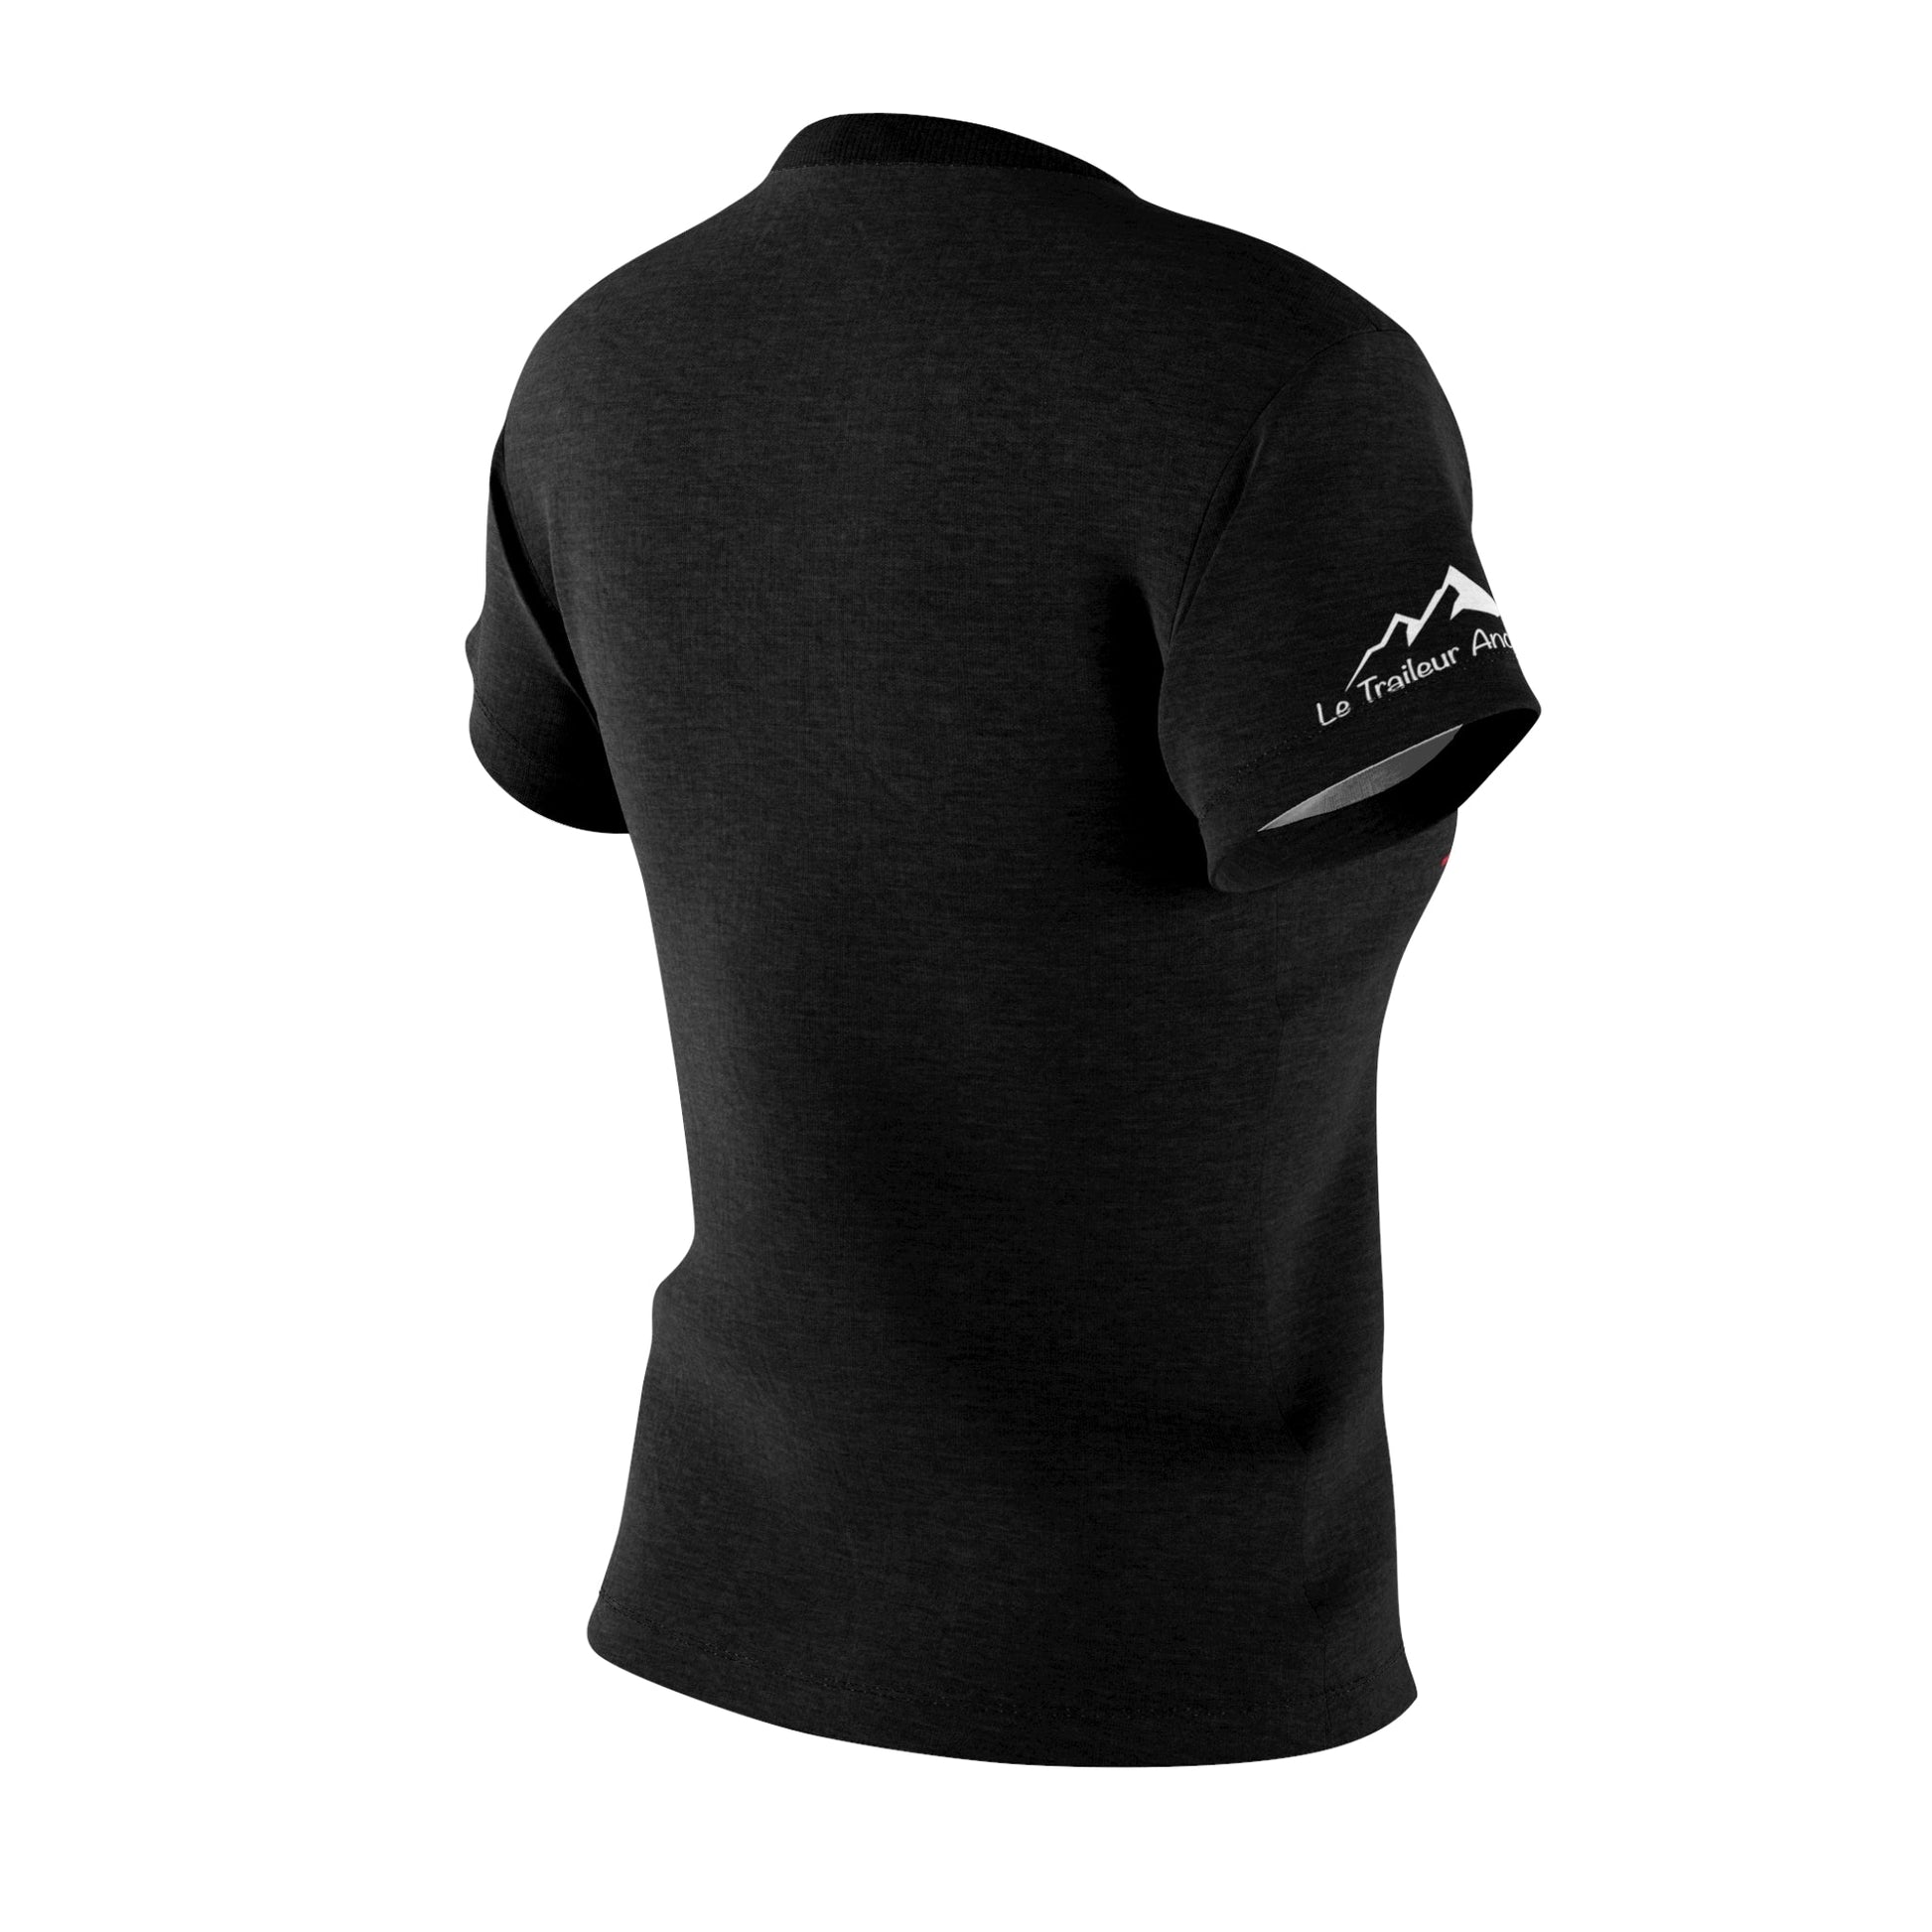 T-Shirt Sport - Noir - Femme - Collection "Fra©tiguée"(130) - Le Traileur Anonyme